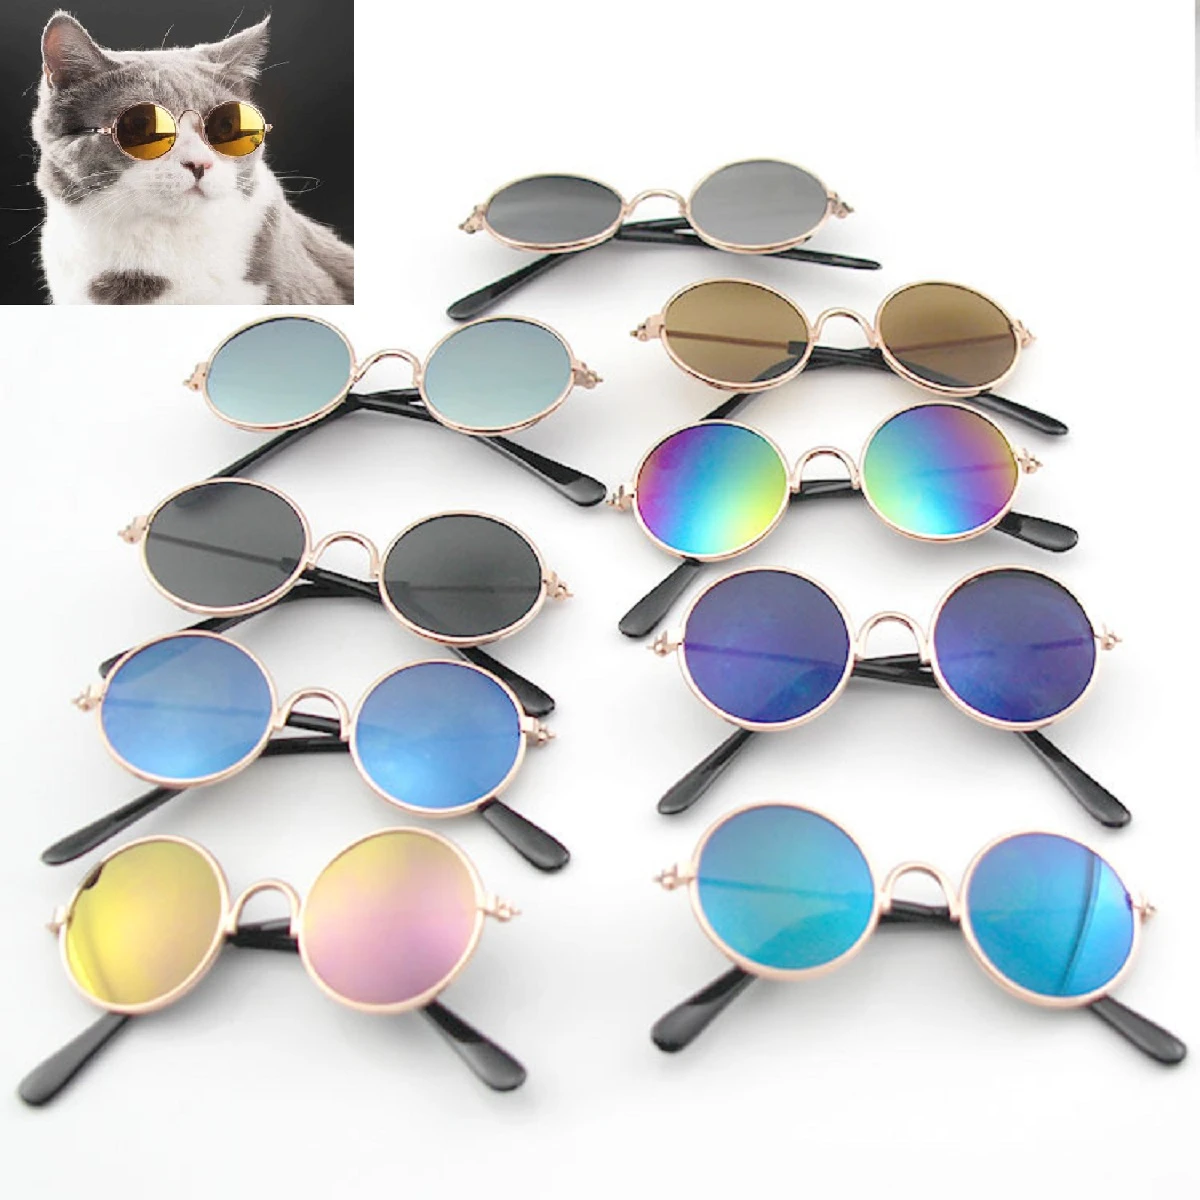 Zakje Ciro Weinig Huisdier Producten Mooie Vintage Ronde Kat Zonnebril Reflectie Eye Bril  Voor Kleine Hond Kat Pet 'S Props Accessoires|Kat Accessoires| - AliExpress